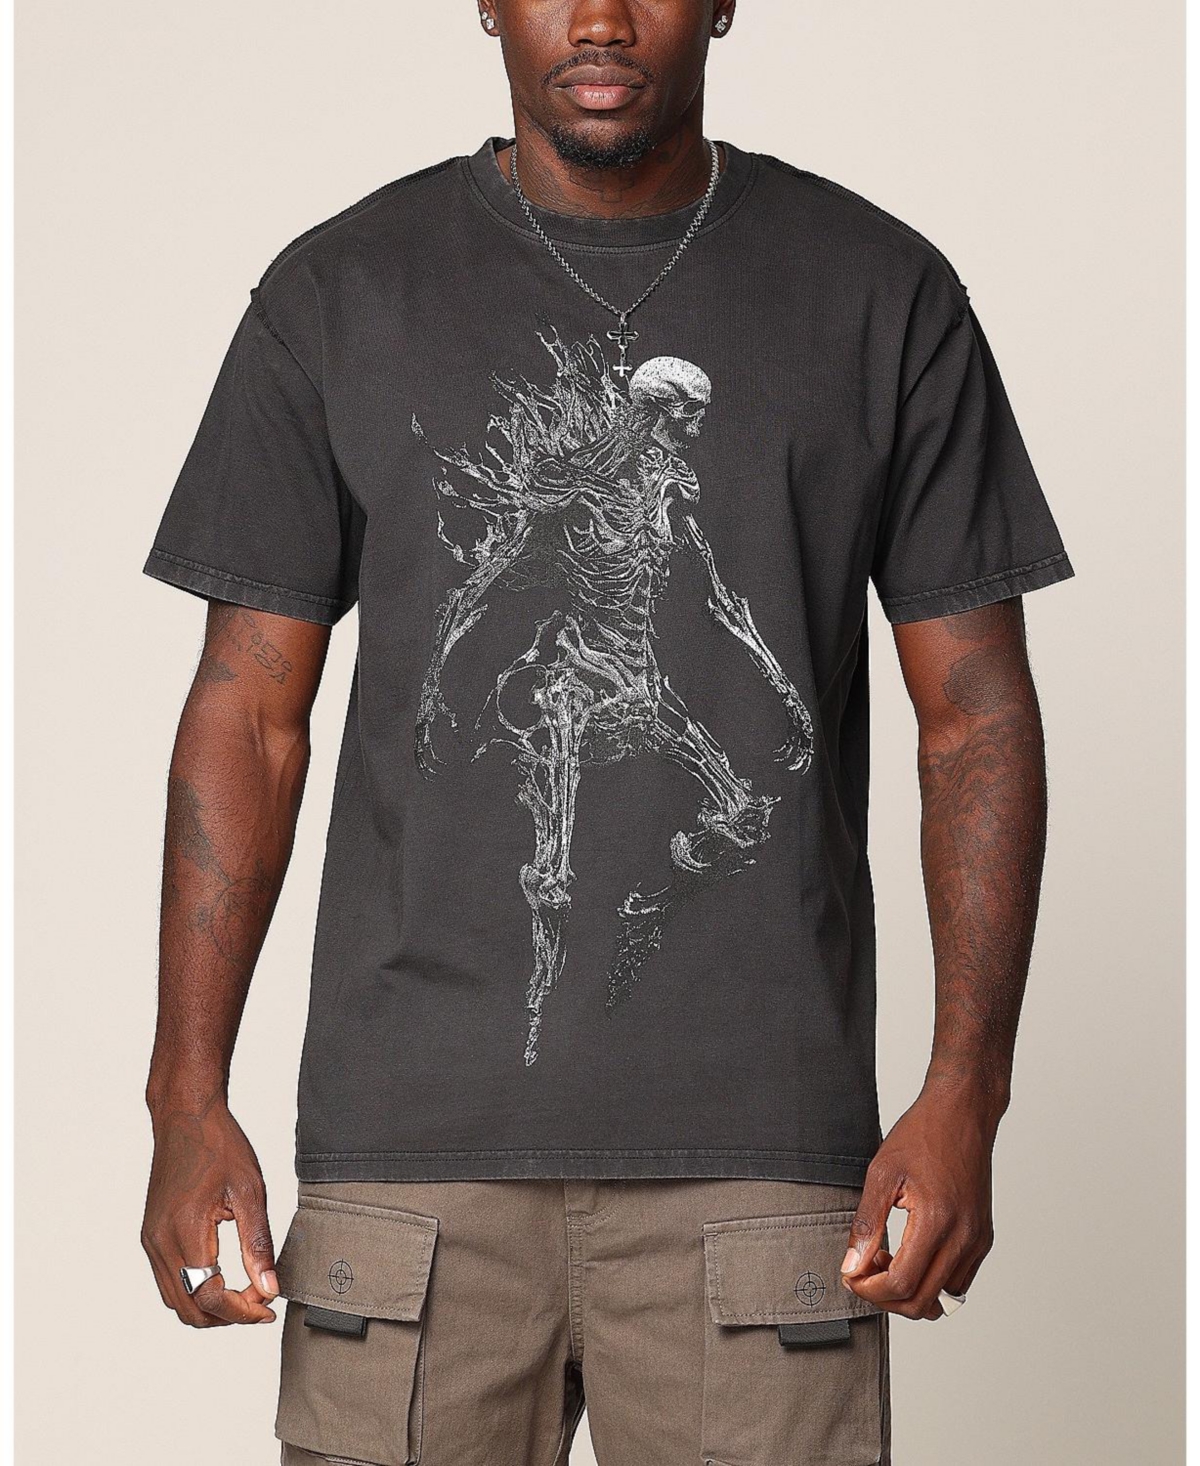 Men's Wraith Cut Vintage T-Shirt - Vintage black